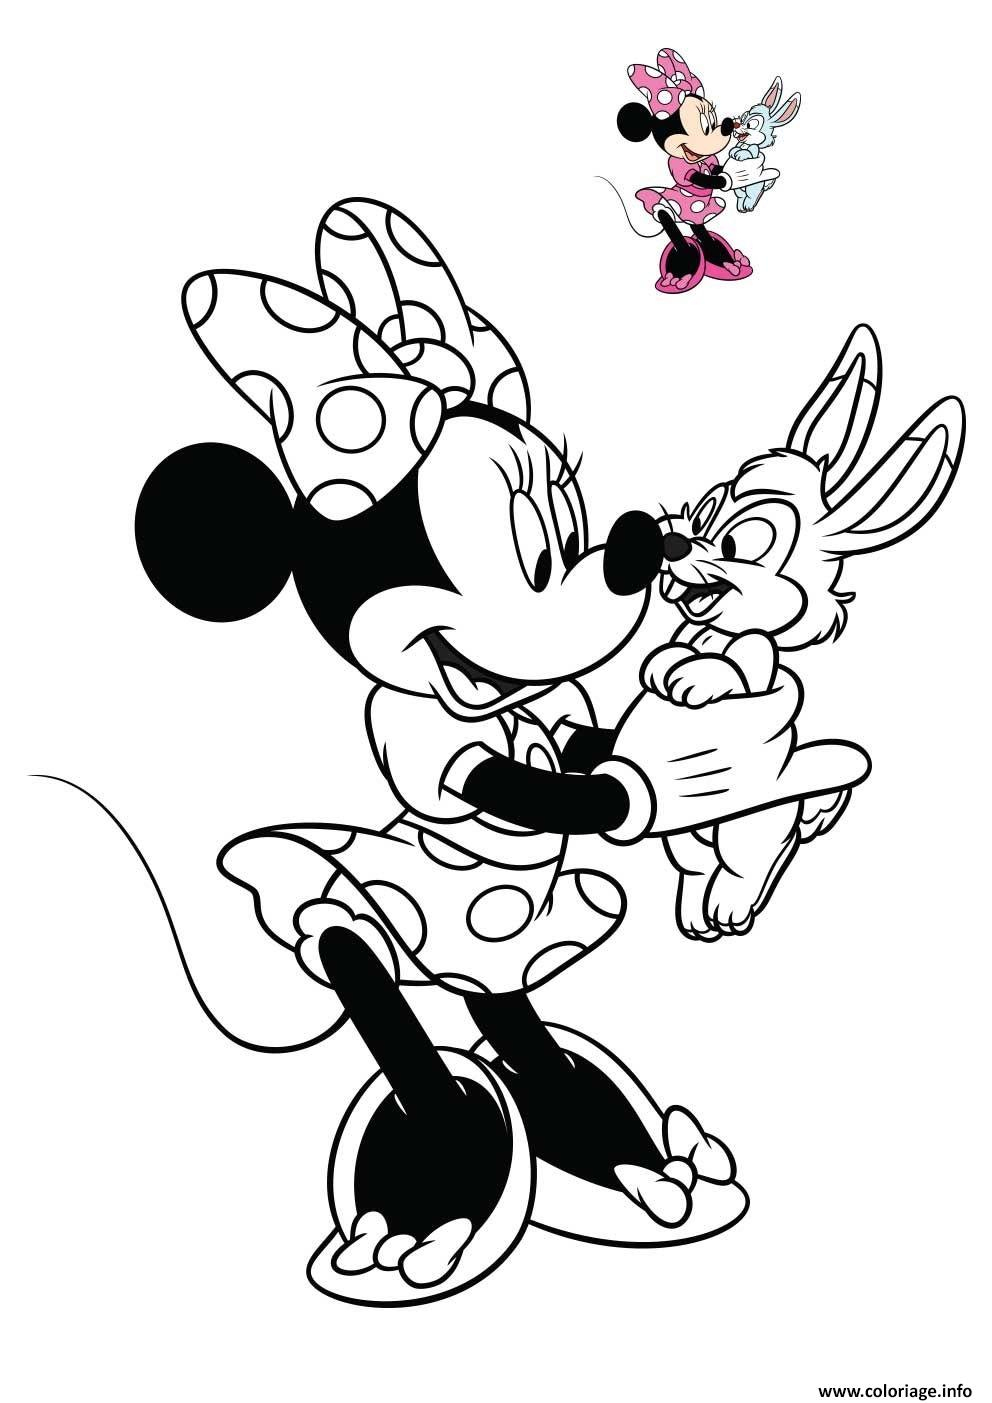 Coloriage Minnie Mouse Souris Anthropomorphe Dessin Disney Walt À Imprimer destiné Dessins A Imprimer